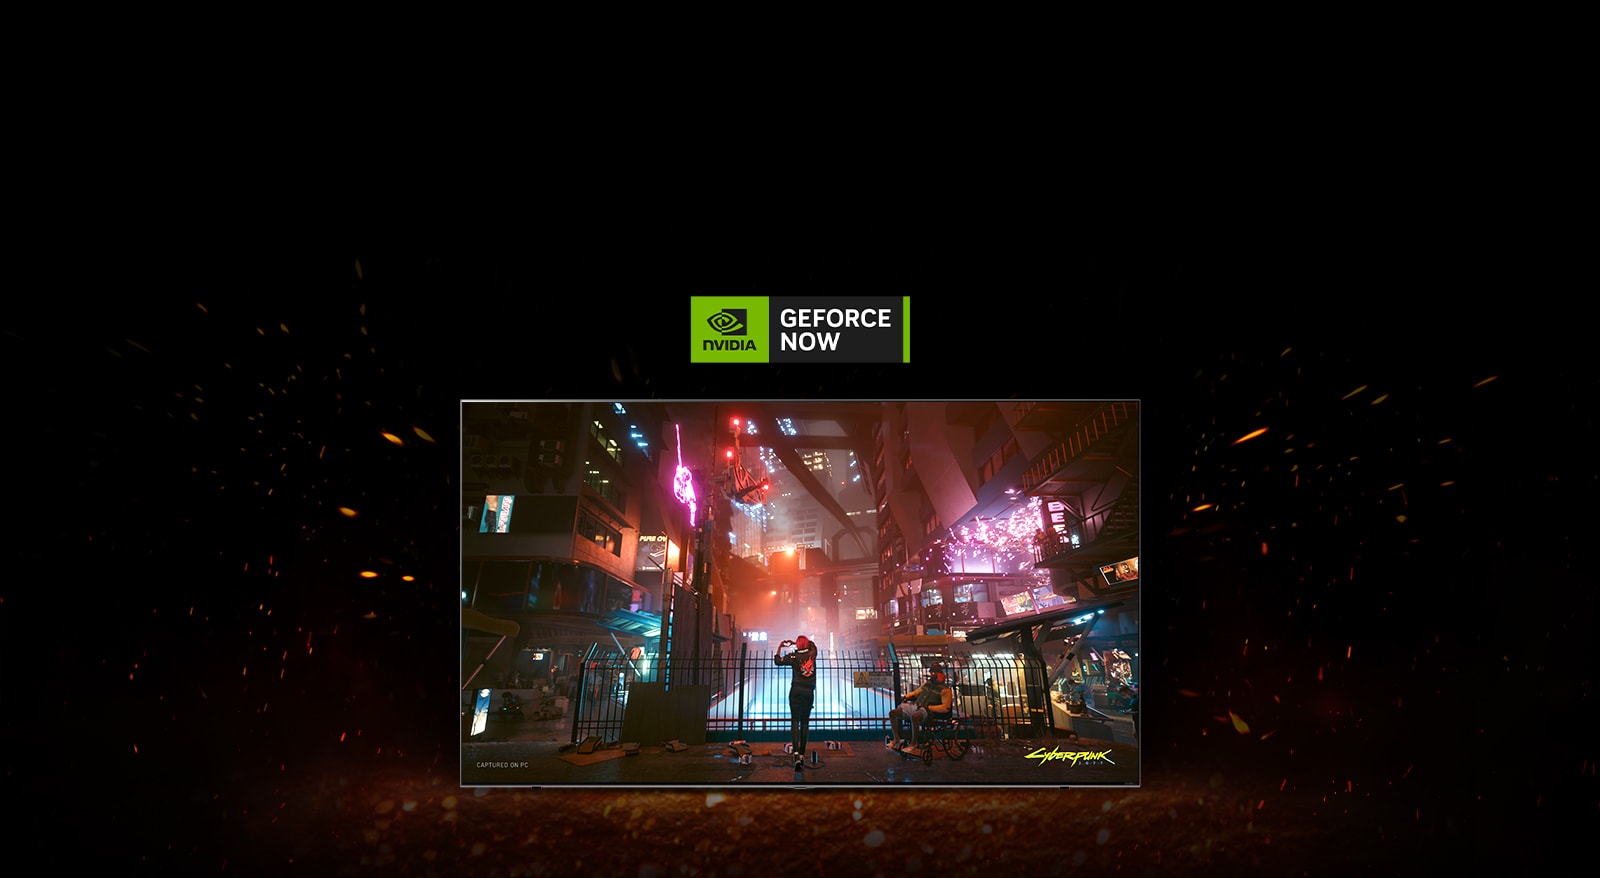 Okolo televízora vidieť iskry vyskakujúce z plameňa a na obrazovke je záber z hry Cyberpunk. Nad televízorom je logo služby GeForce NOW.